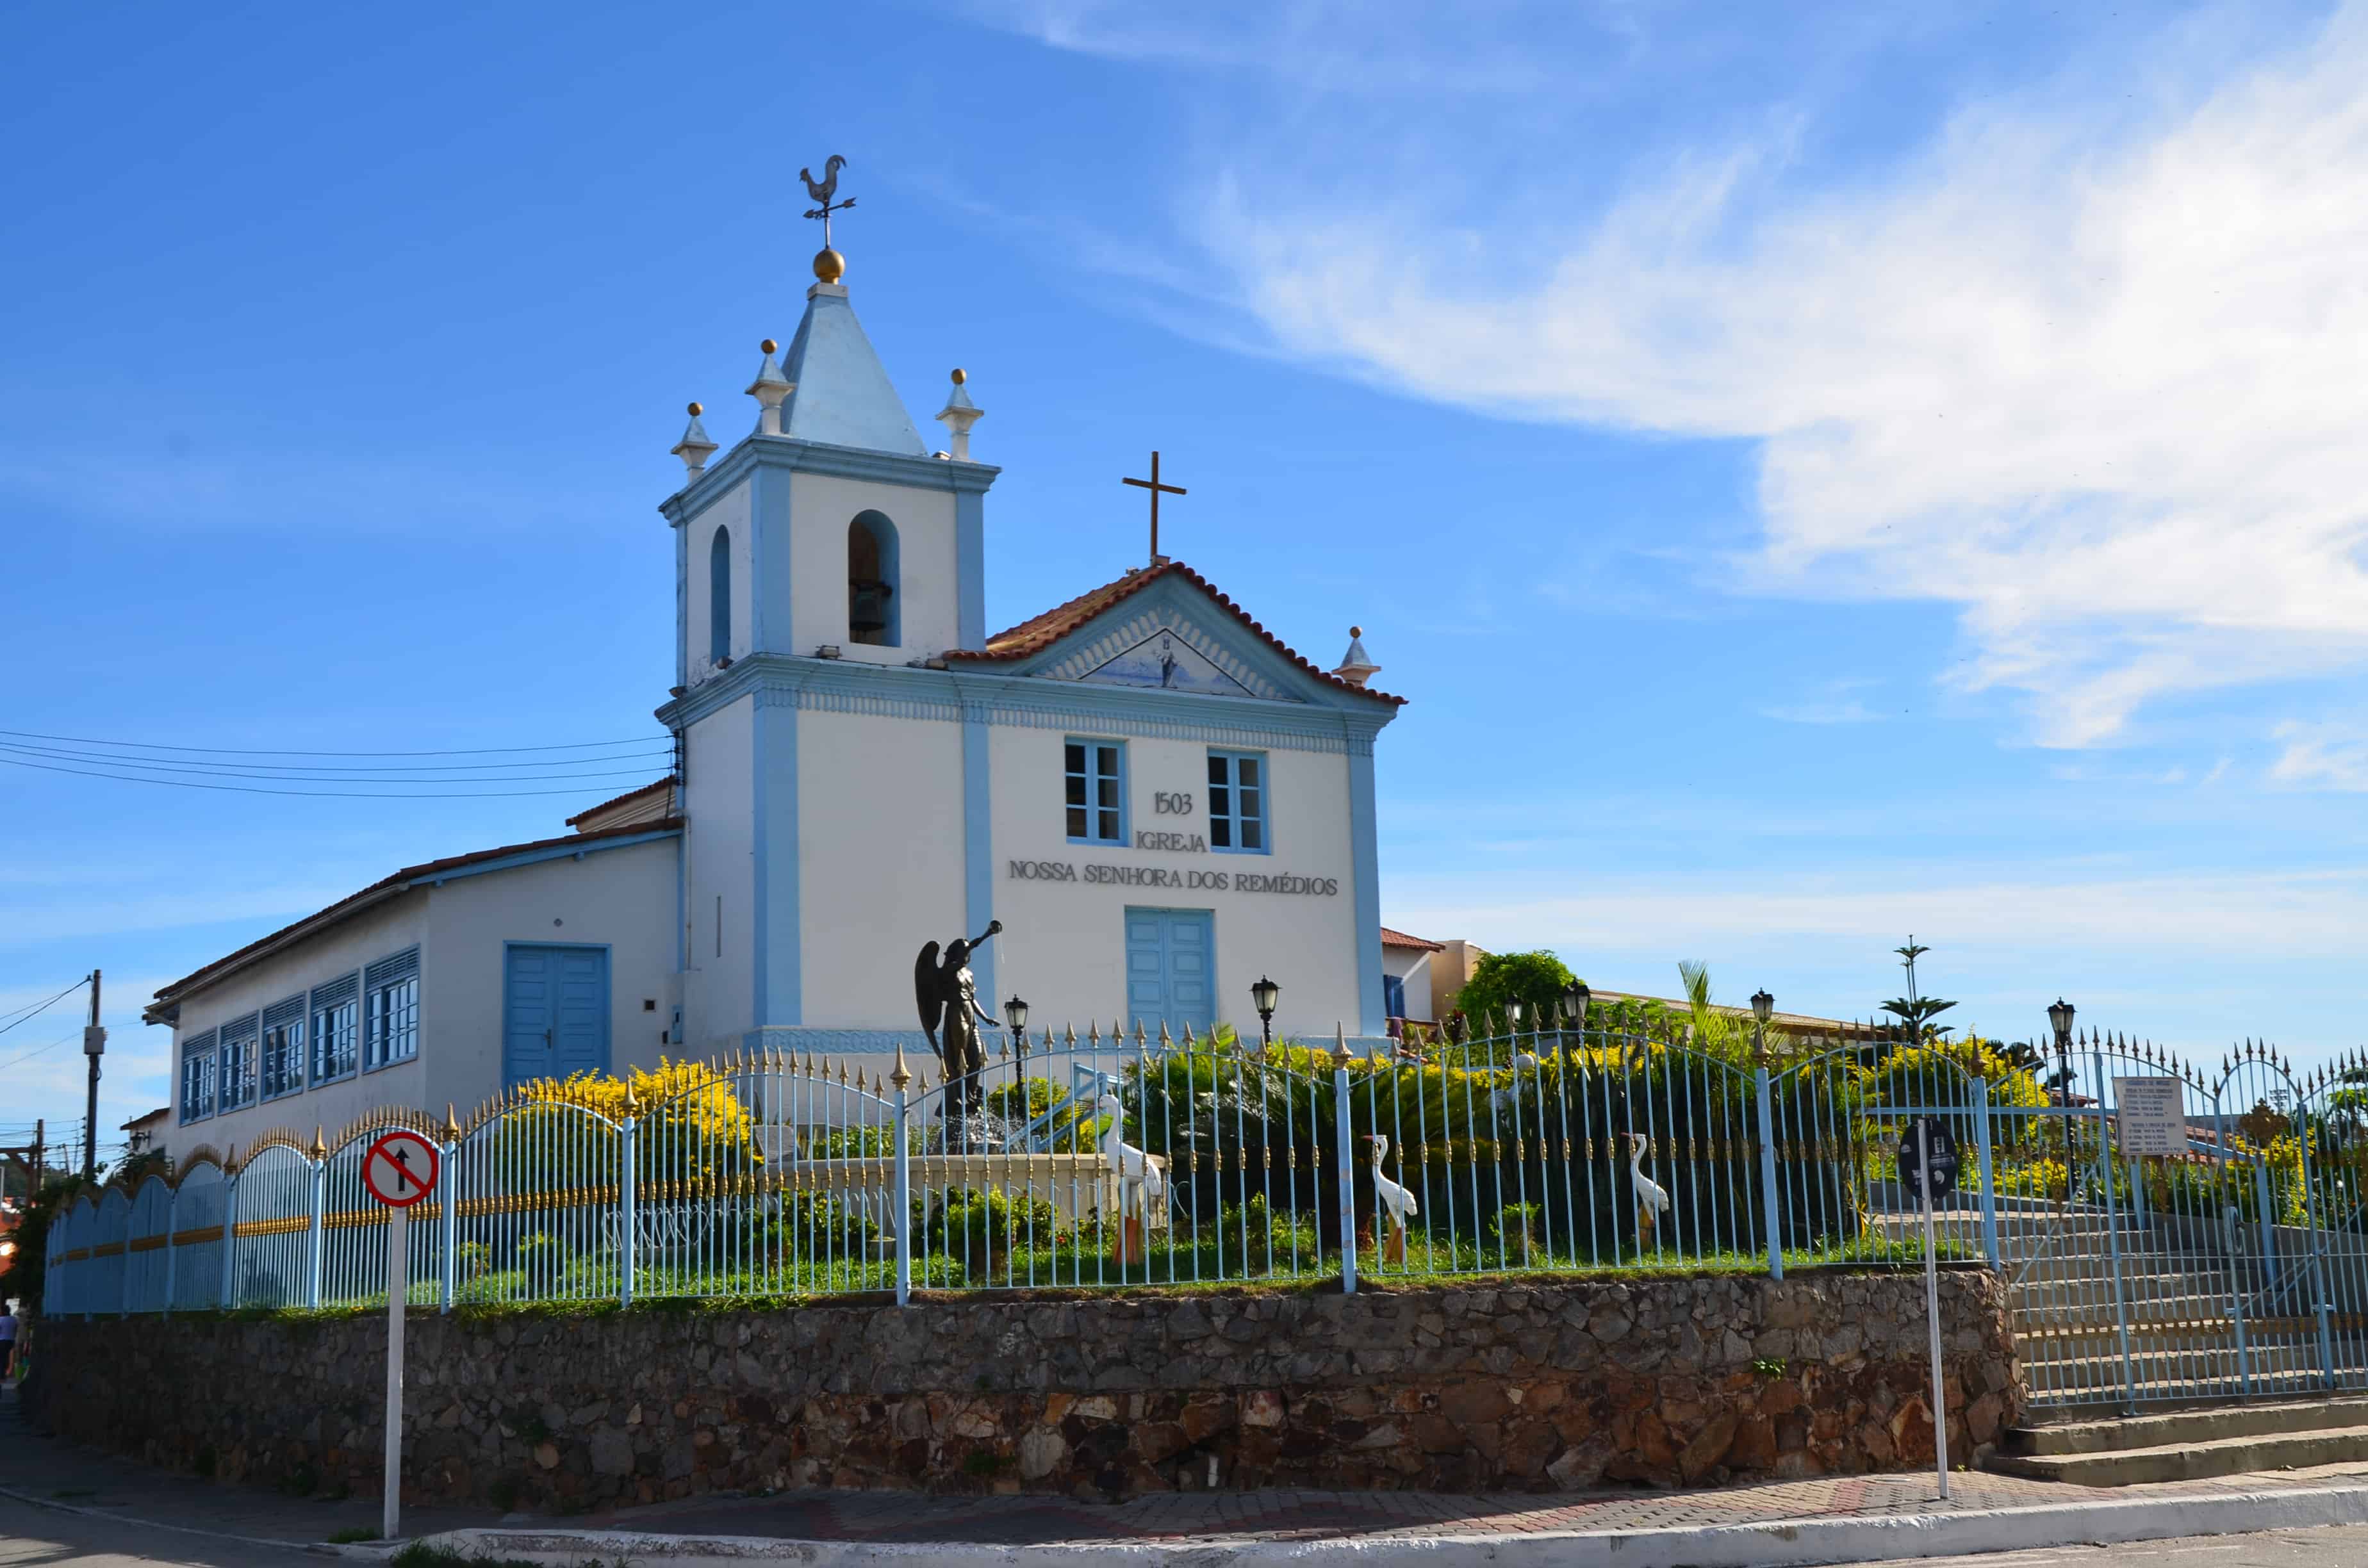 Igreja Nossa Senhora dos Remédios in Arraial do Cabo, Brazil